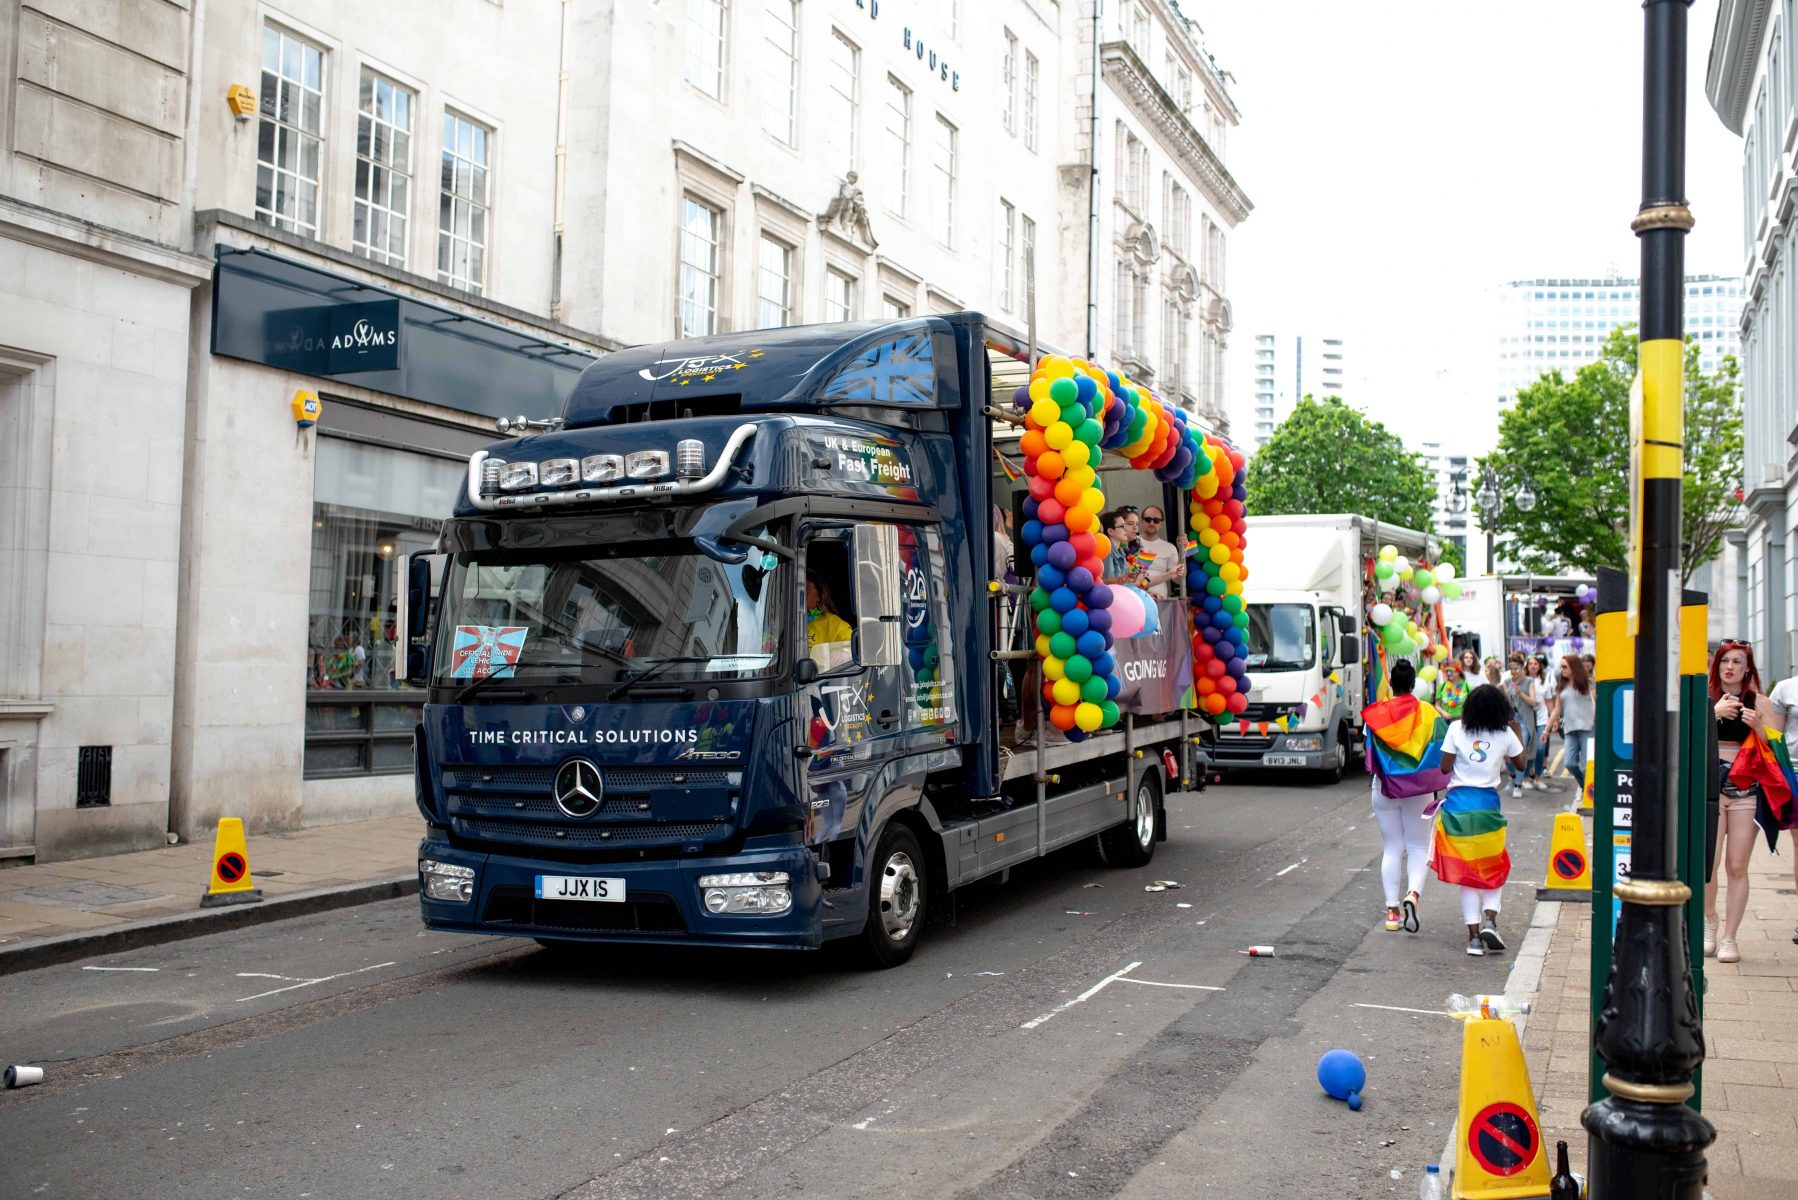 Birmingham Pride Carnival Parade 2019